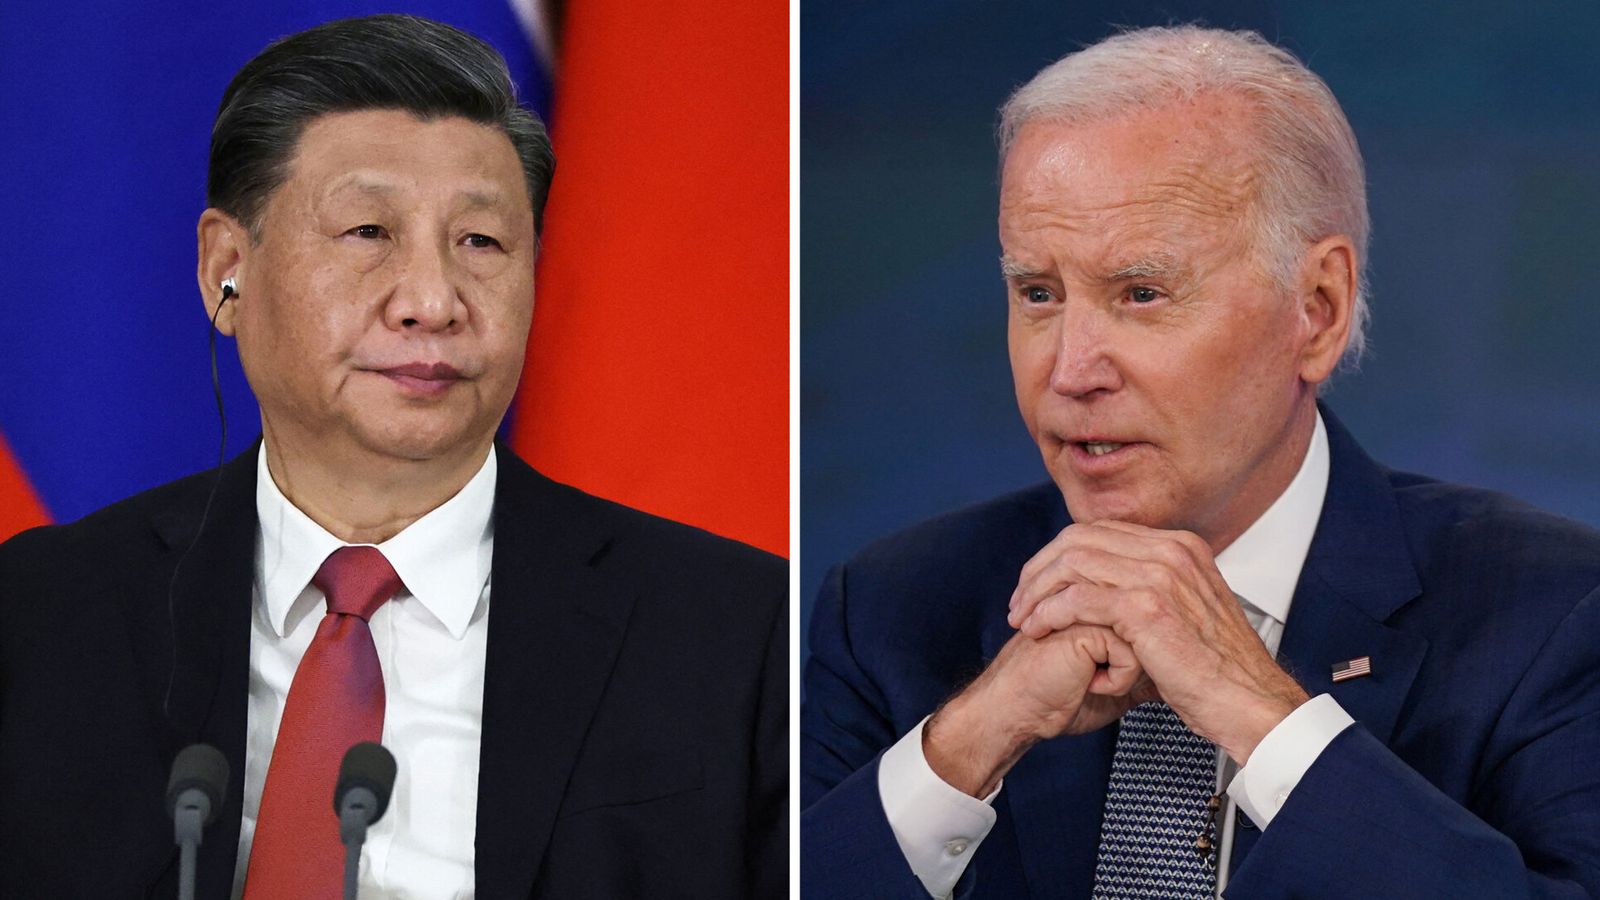 Alors que les relations entre les États-Unis et la Chine se détériorent, la rencontre Biden-Xi est devenue plus importante que jamais.